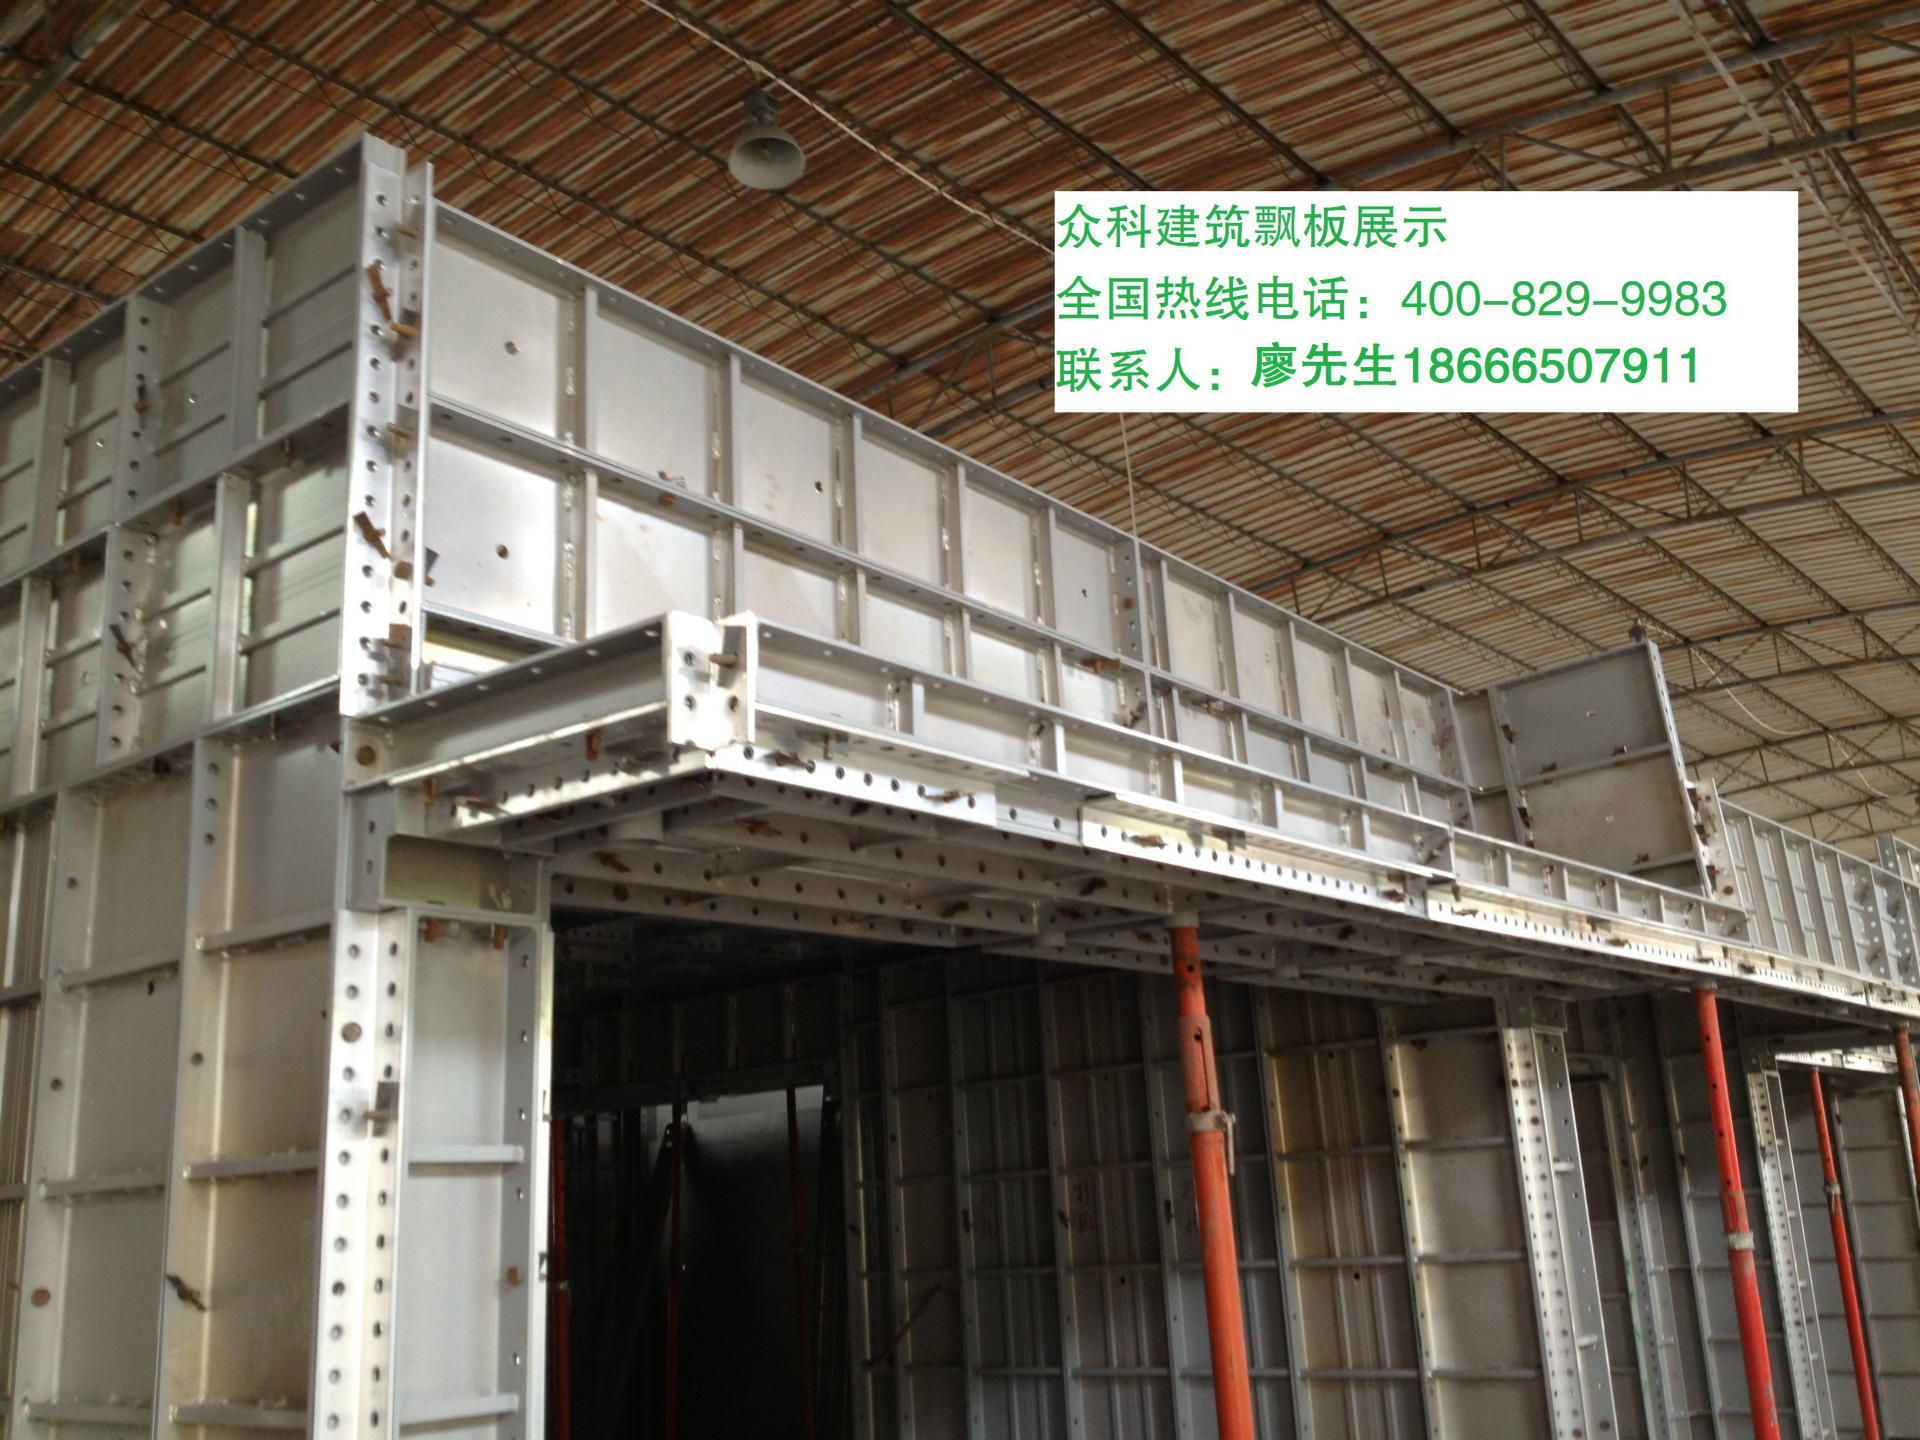 厂家直销铝模板 万科建筑铝模板商 铝合金模板